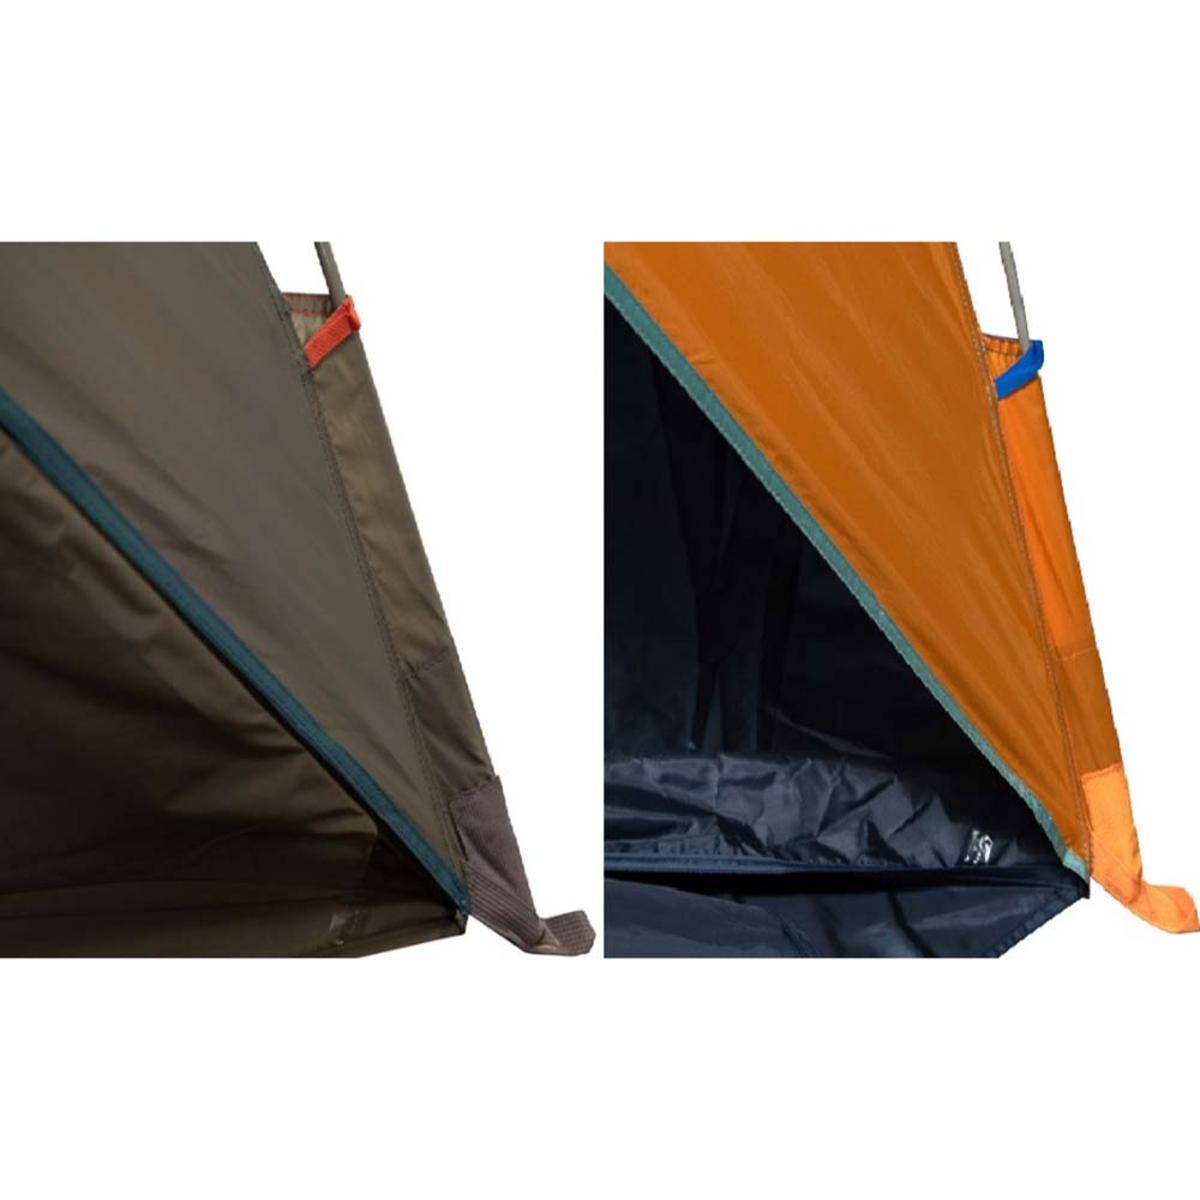 Kelty Cabana Tent Shade Shelter